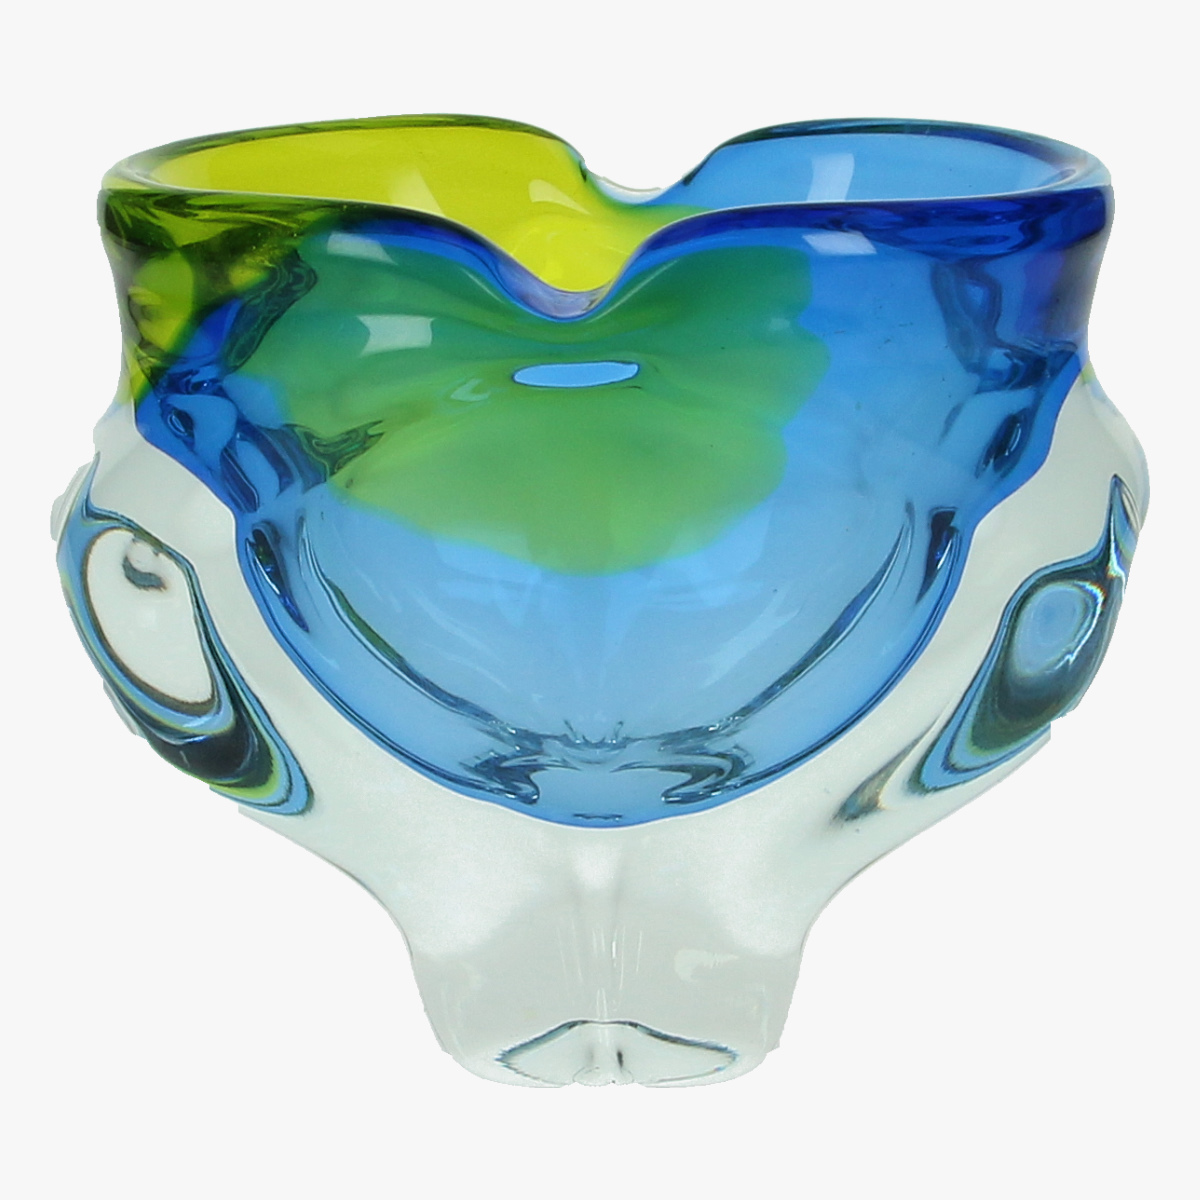 Afbeeldingen van glaswerk vaas 